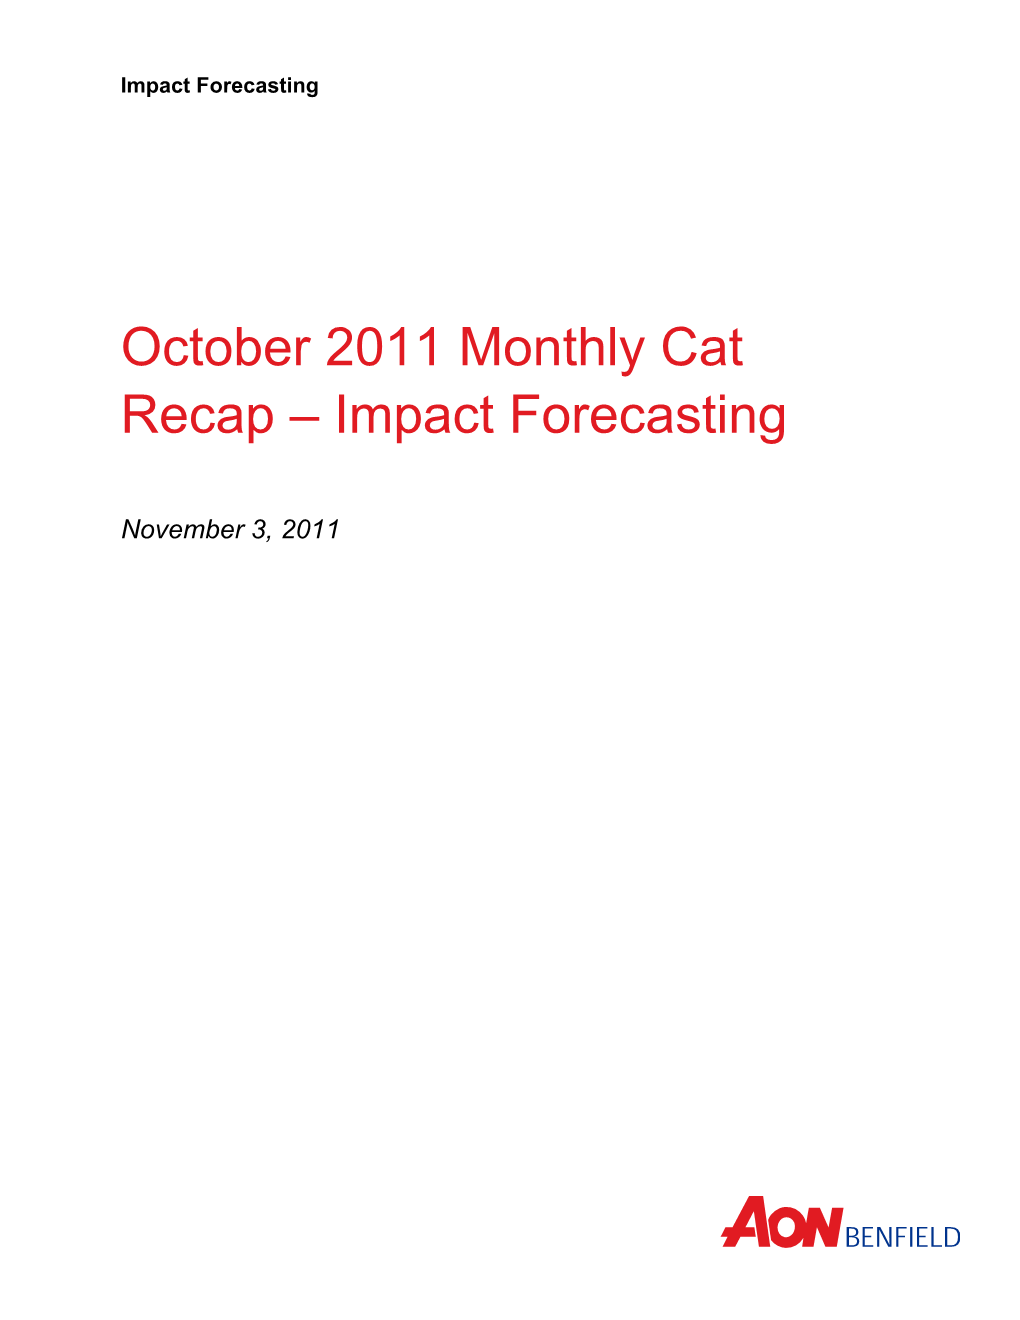 October 2011 Monthly Cat Recap 1 1